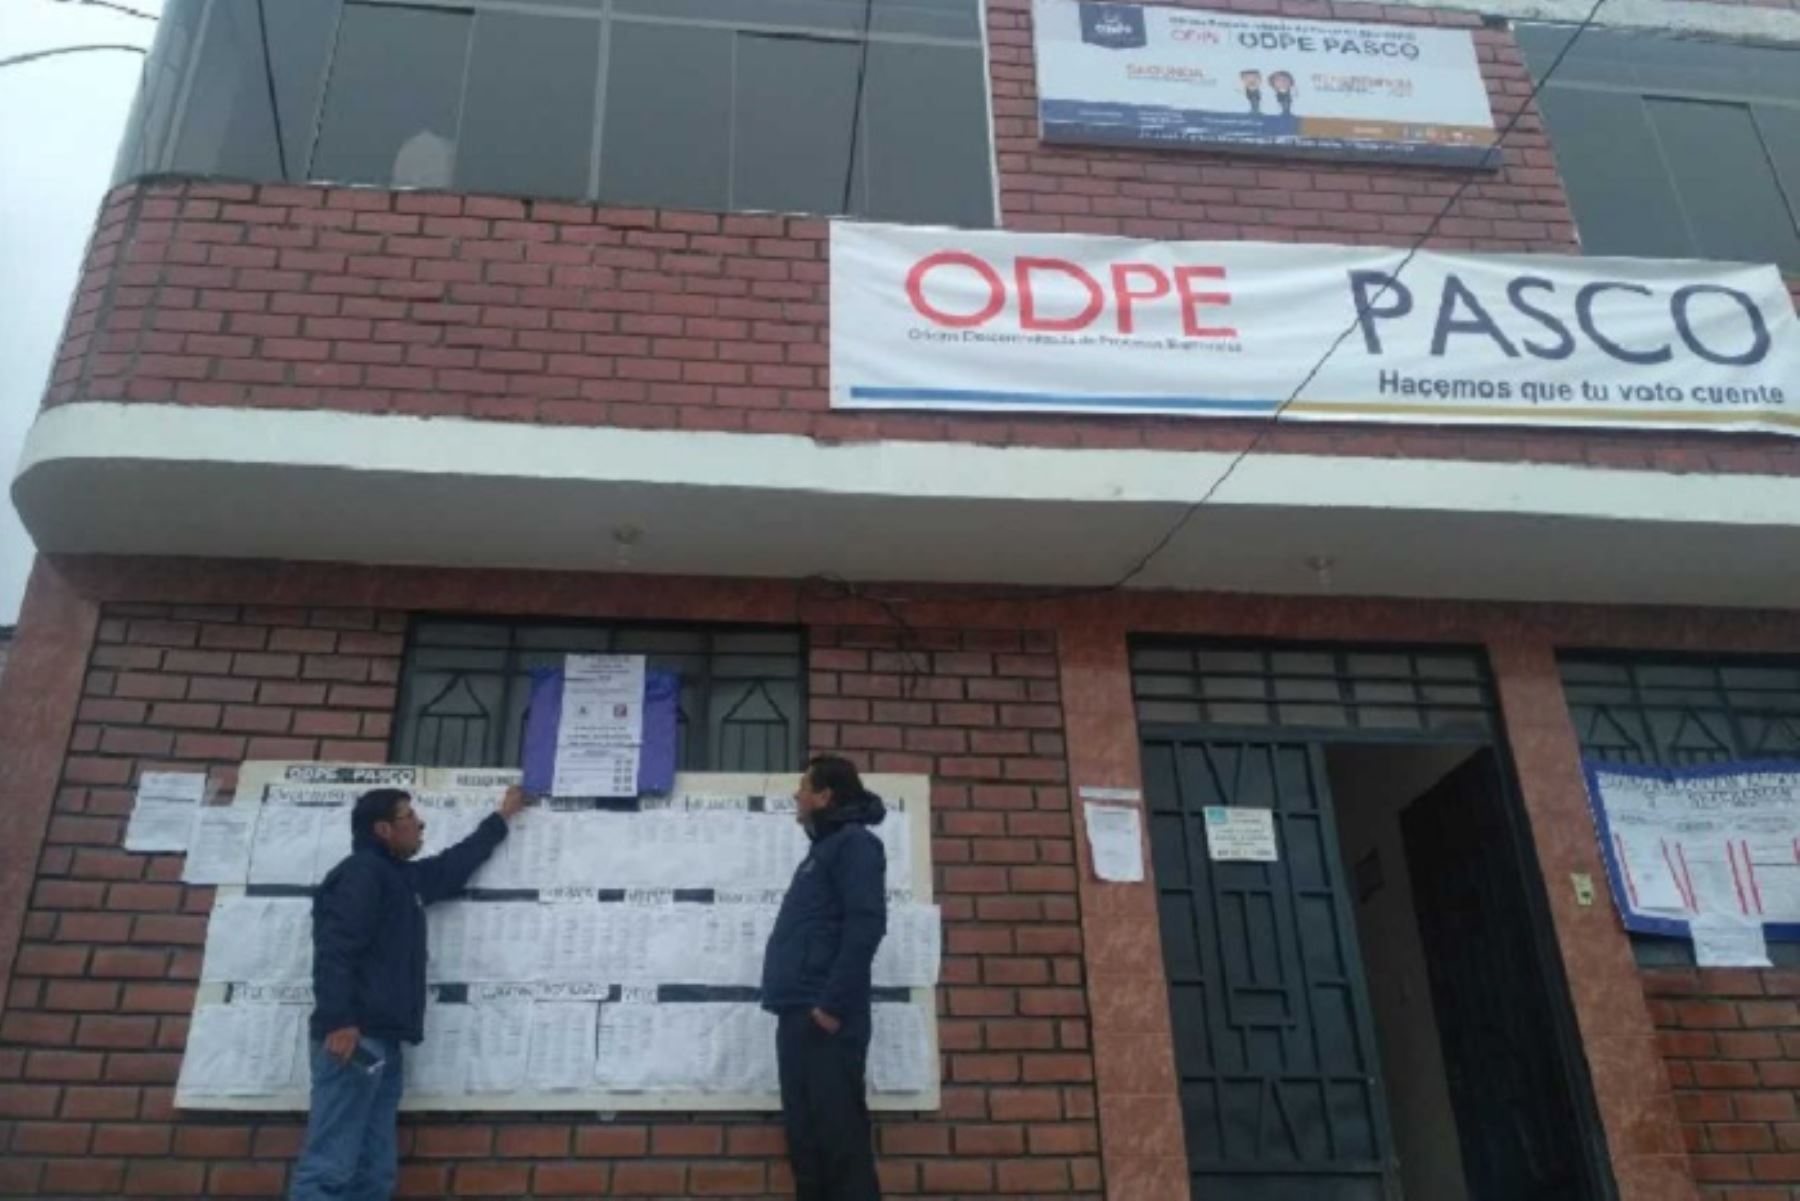 La Oficina Descentralizada de Procesos Electorales (ODPE) Pasco publicó el cartel de candidatos para la segunda vuelta regional y el cartel de opciones en consulta del referéndum – 2018, programadas para el  9 de diciembre próximo.